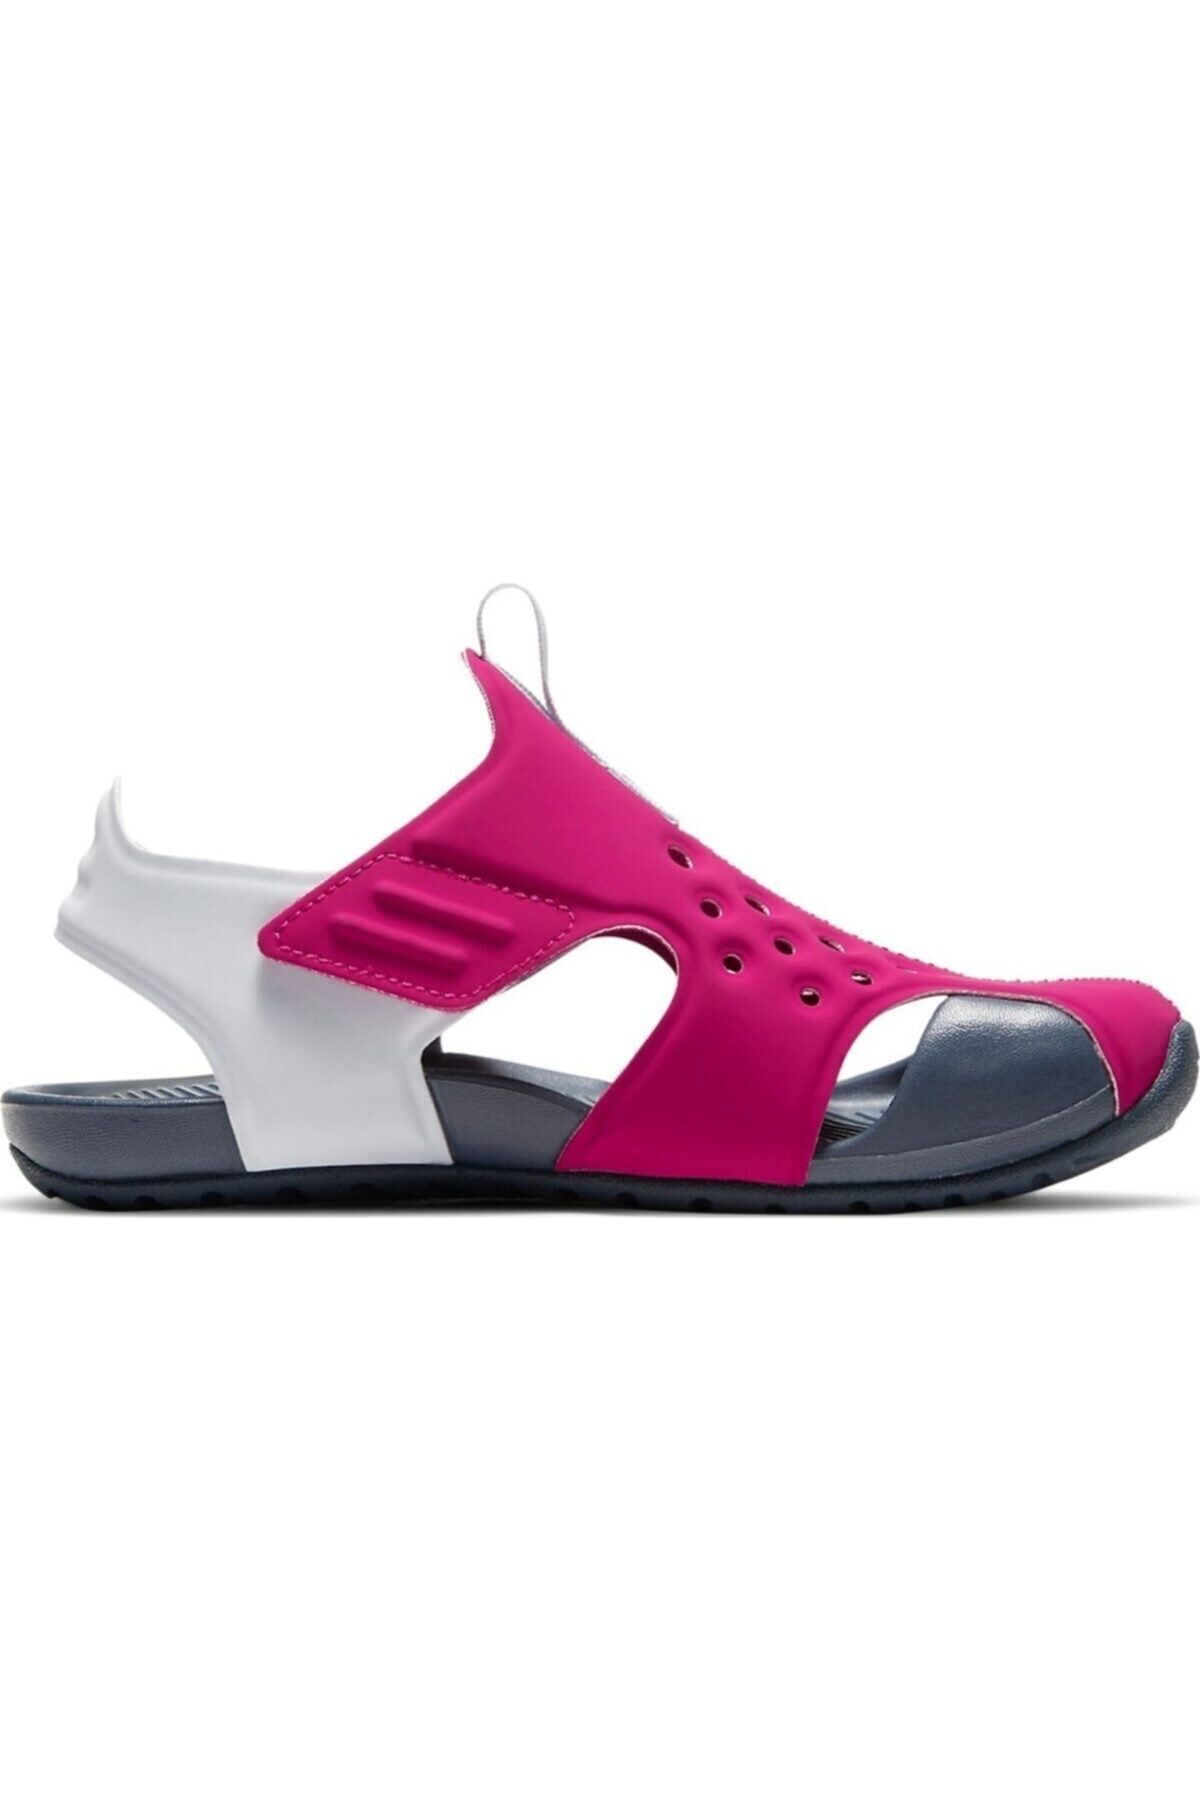 Nike Sunray Protect 2 (PS) Çocuk Sandalet Ayakkabı 943826-604-fusya